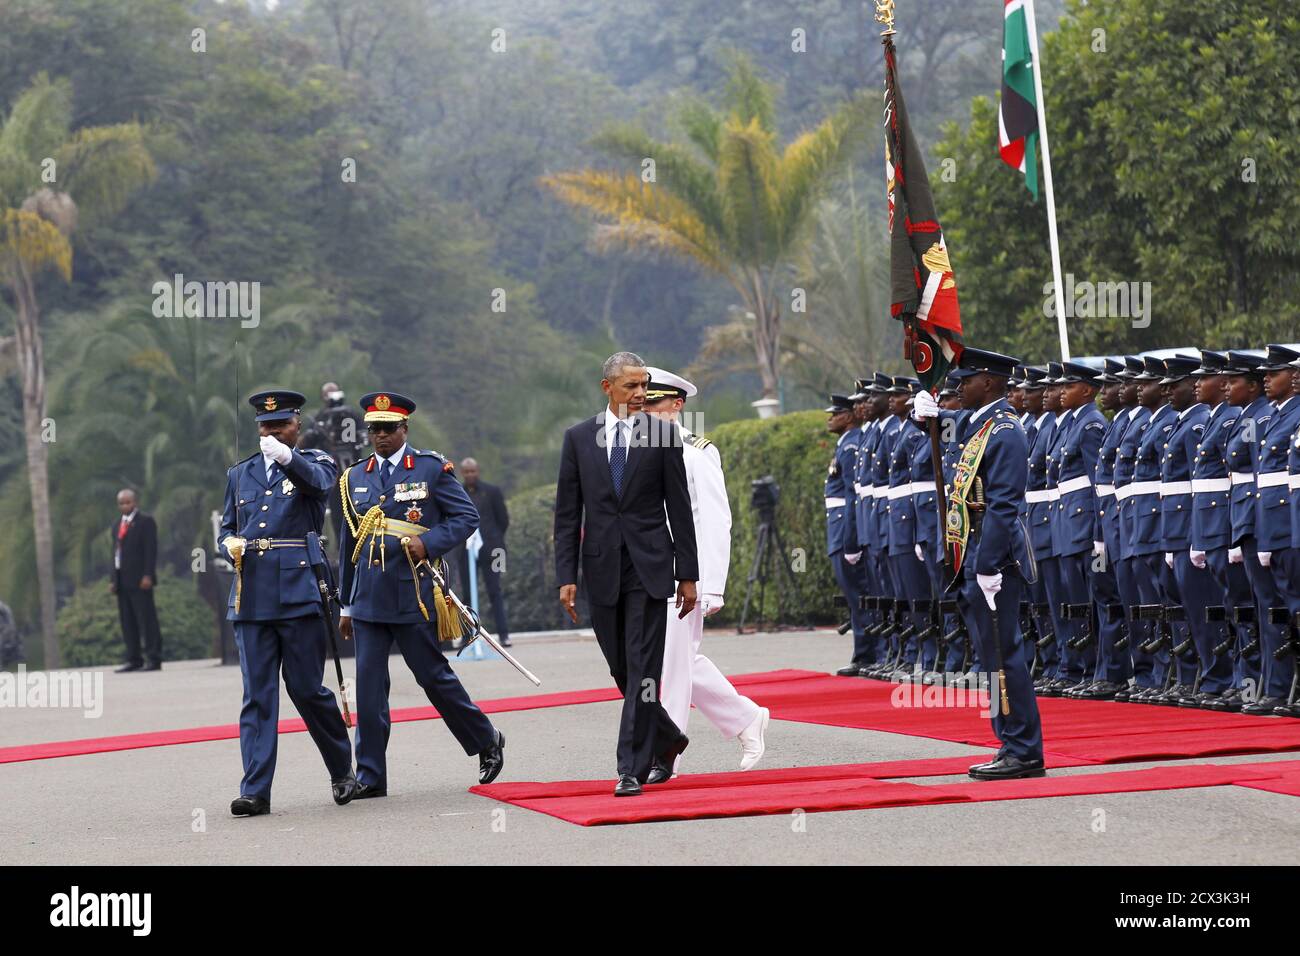 El presidente estadounidense Barack Obama revisa a una guardia de honor de las Fuerzas de Defensa de Kenia durante una visita a la Casa de Estado en Nairobi, la capital de Kenia, el 25 de julio de 2015. REUTERS/Thomas Mukoya Foto de stock